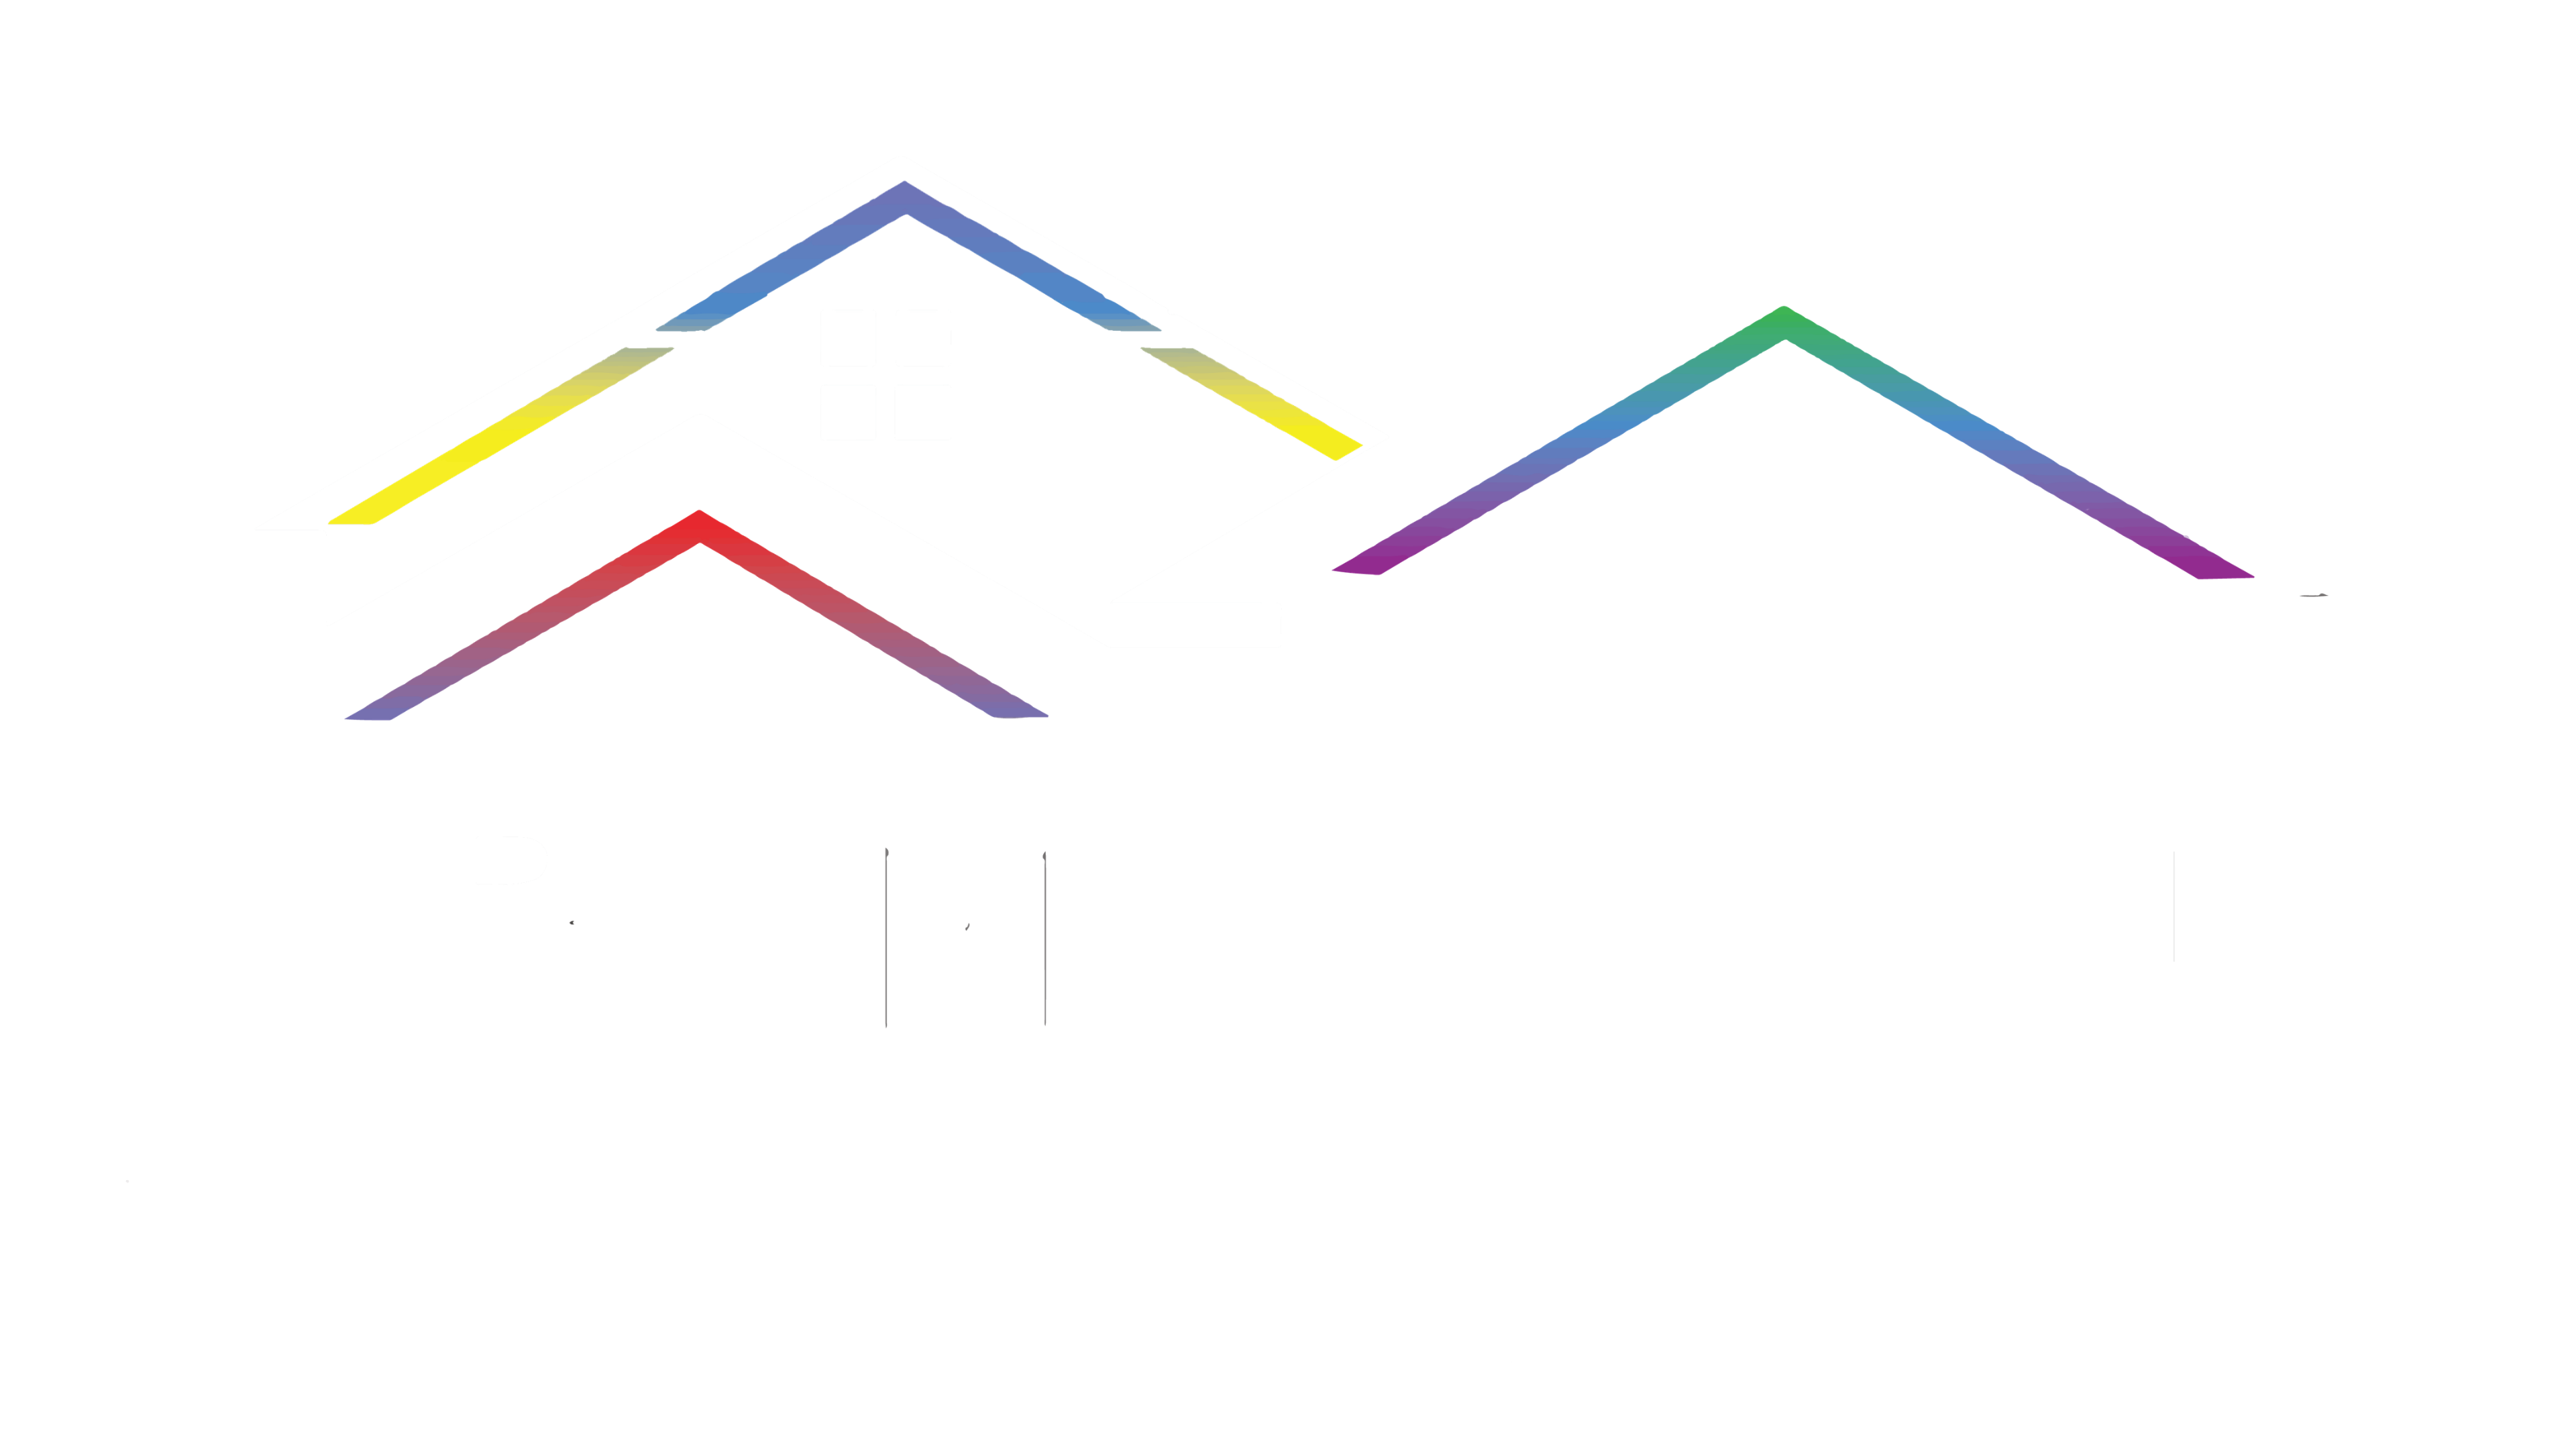 TrimLight Wichita Kansas